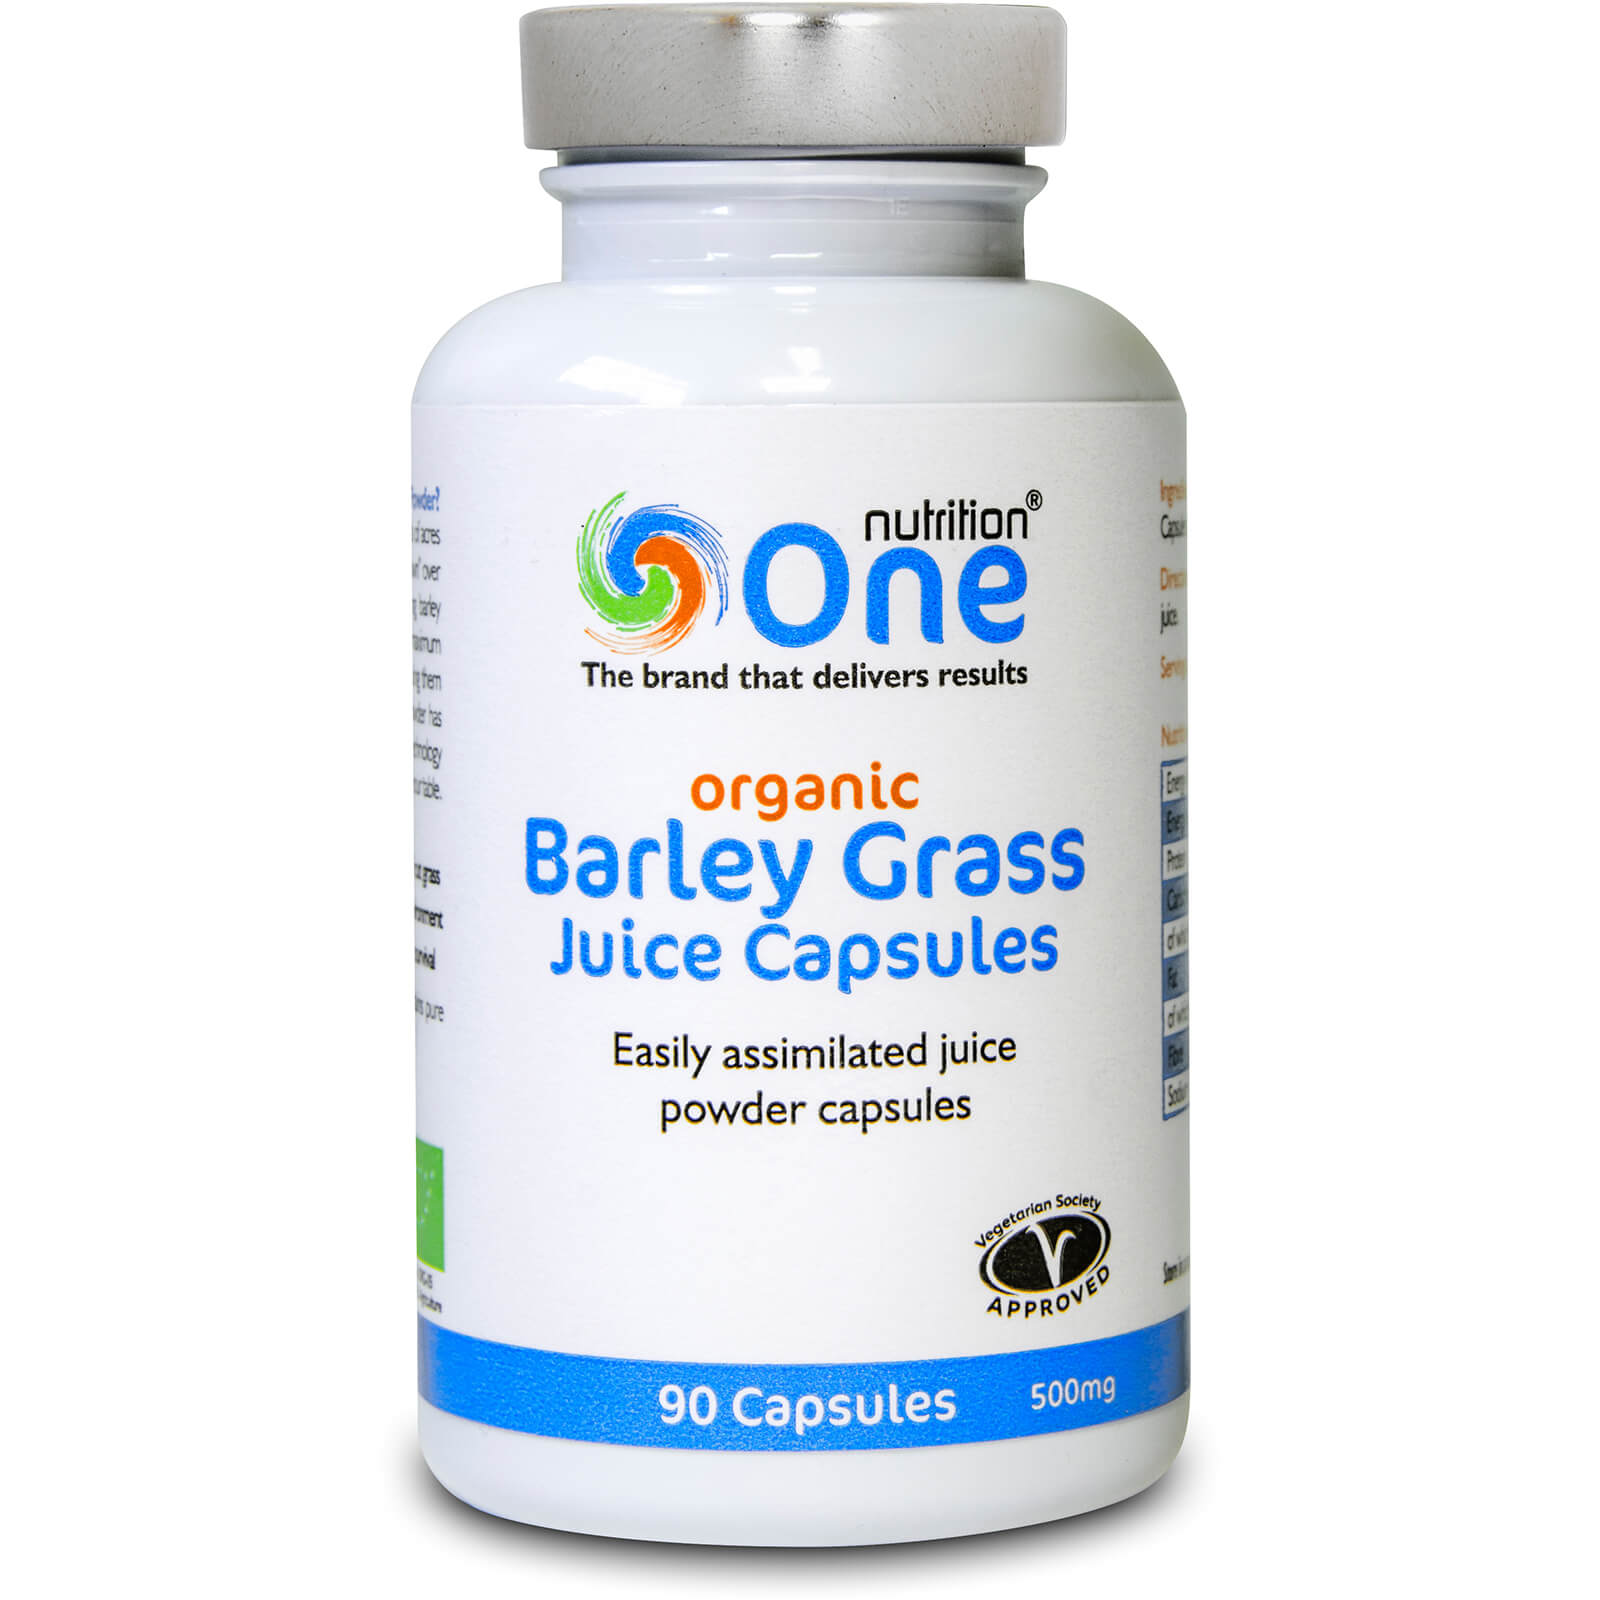 Barley Grass Juice Capsules - 90 Capsules (500mg)